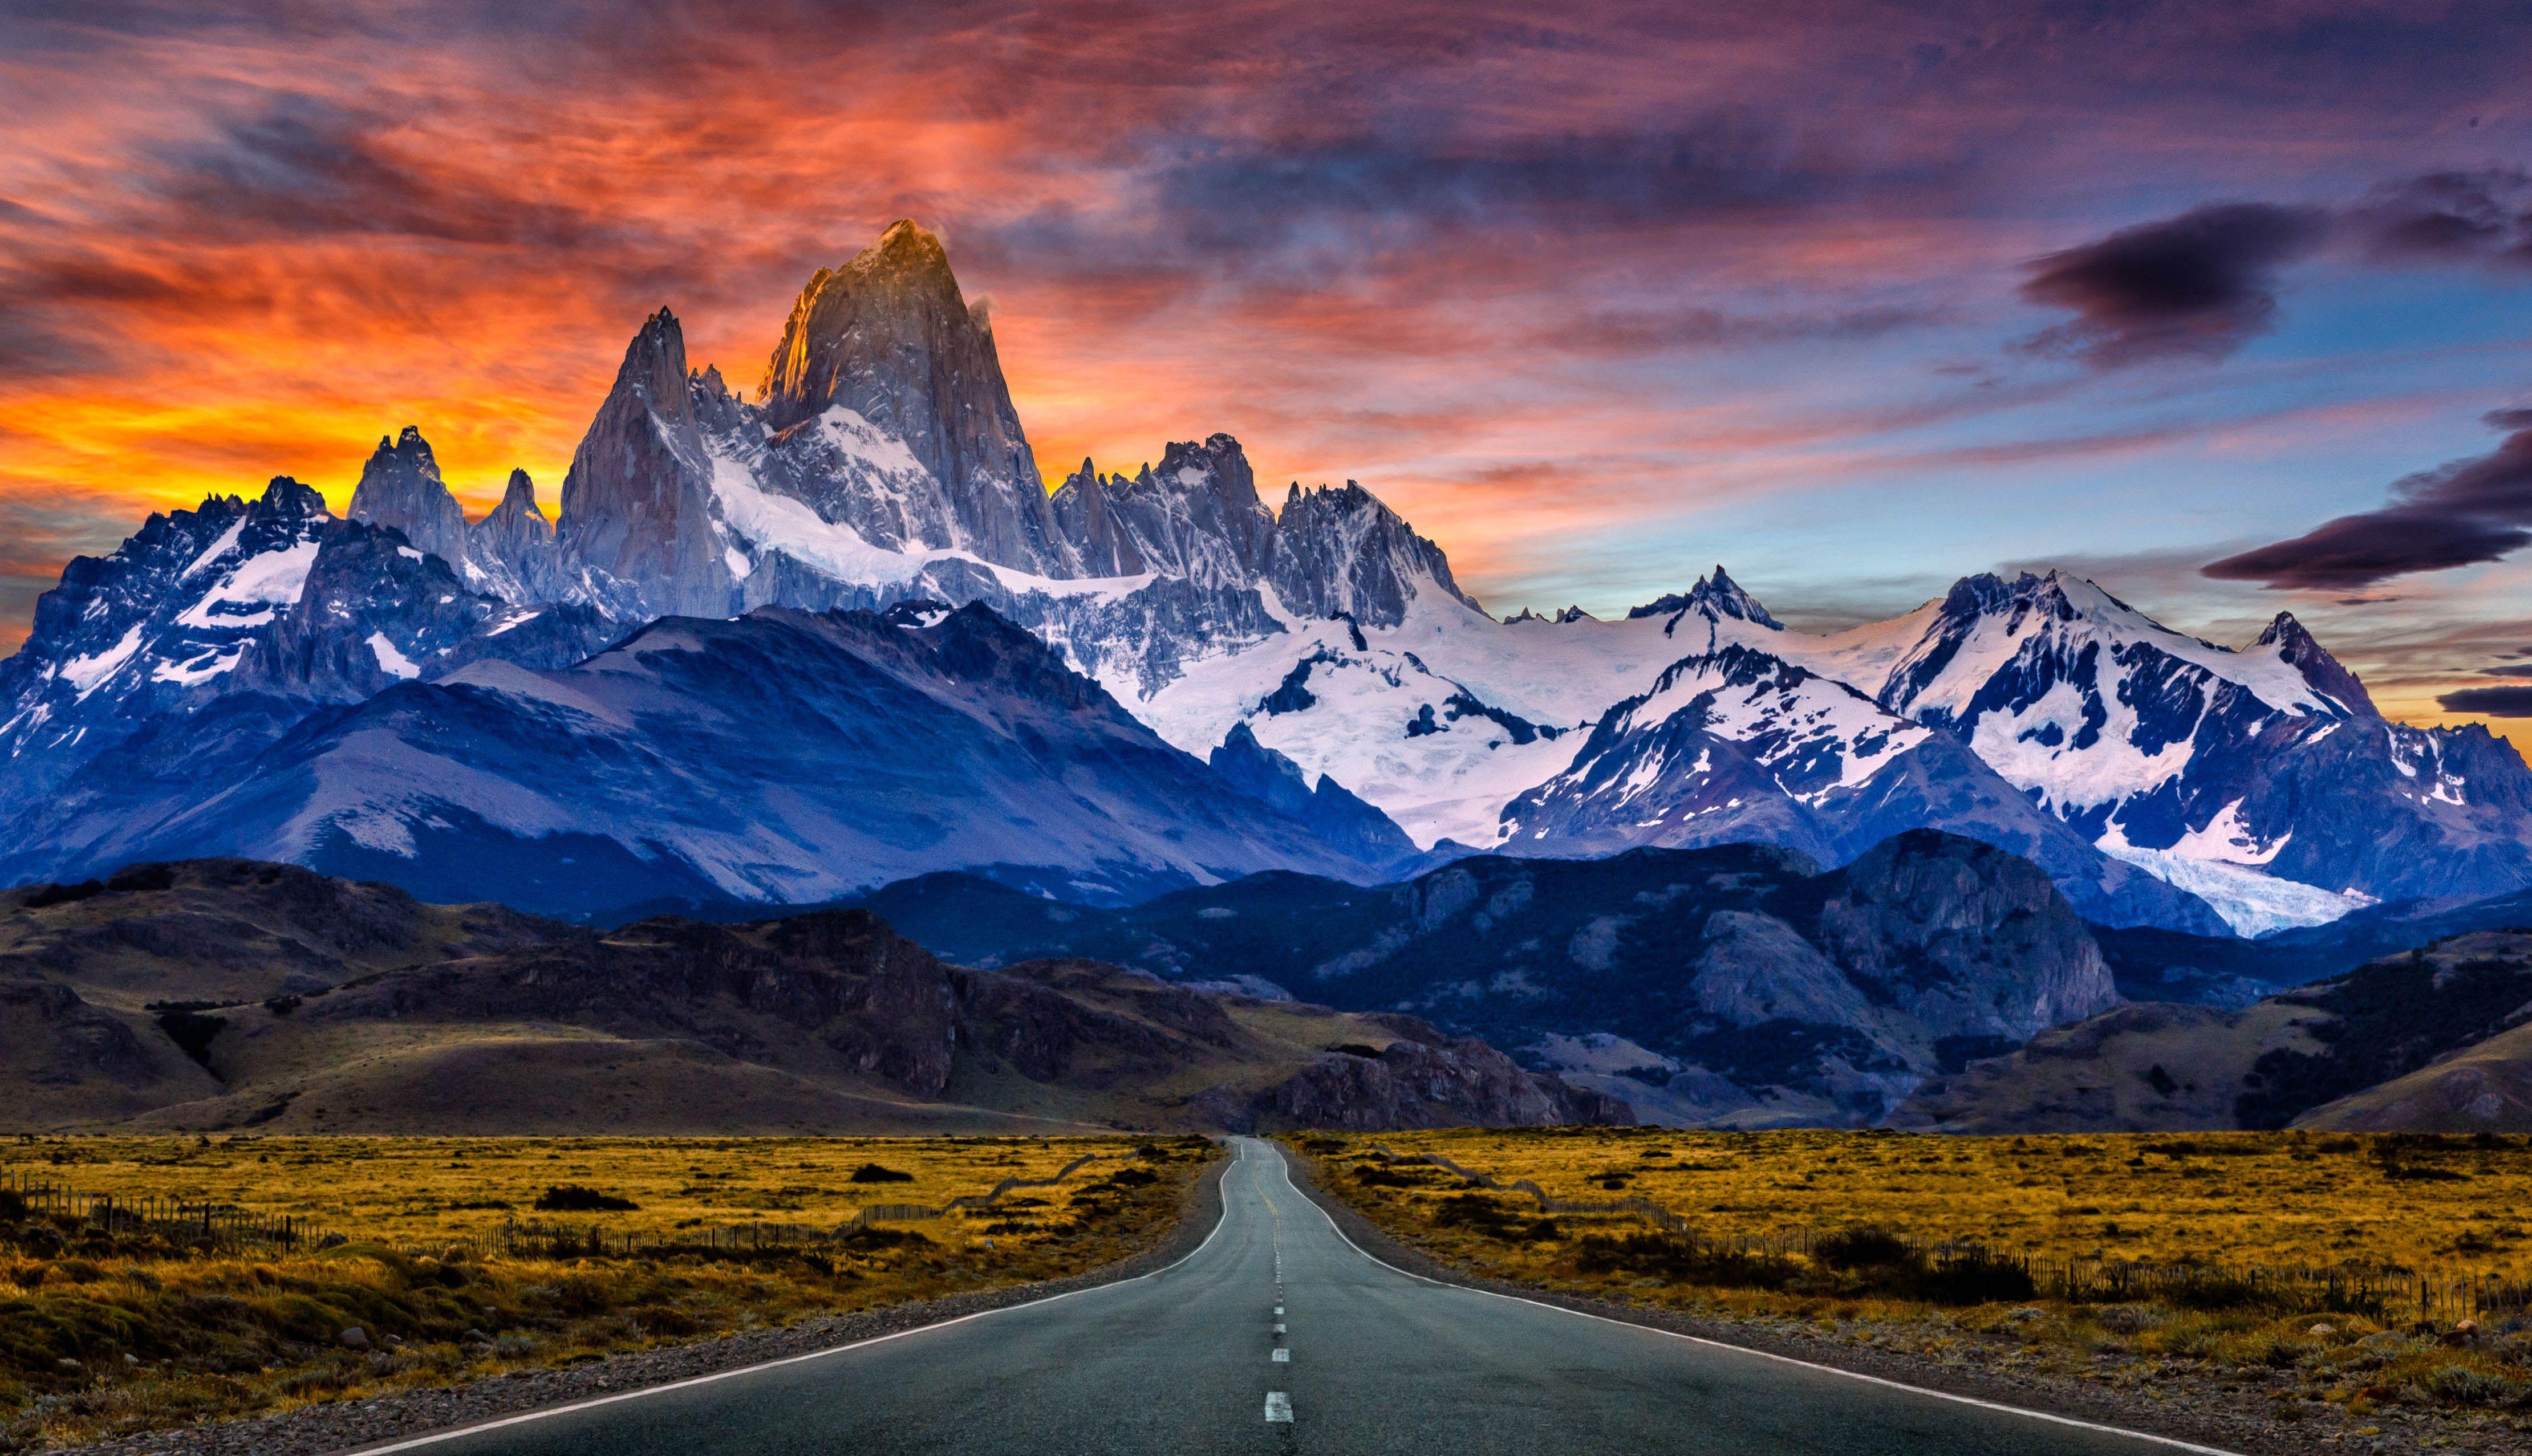 Patagonia là một địa điểm nổi tiếng với khung cảnh thiên nhiên tuyệt đẹp. Những ngọn núi đồi co rúm, các con đường đầy những thử thách và khởi đầu cho những chuyến phiêu lưu kỳ thú. Hãy cùng đến với Patagonia để khám phá những điều mới lạ và đắm chìm trong vẻ đẹp của đất nước này!